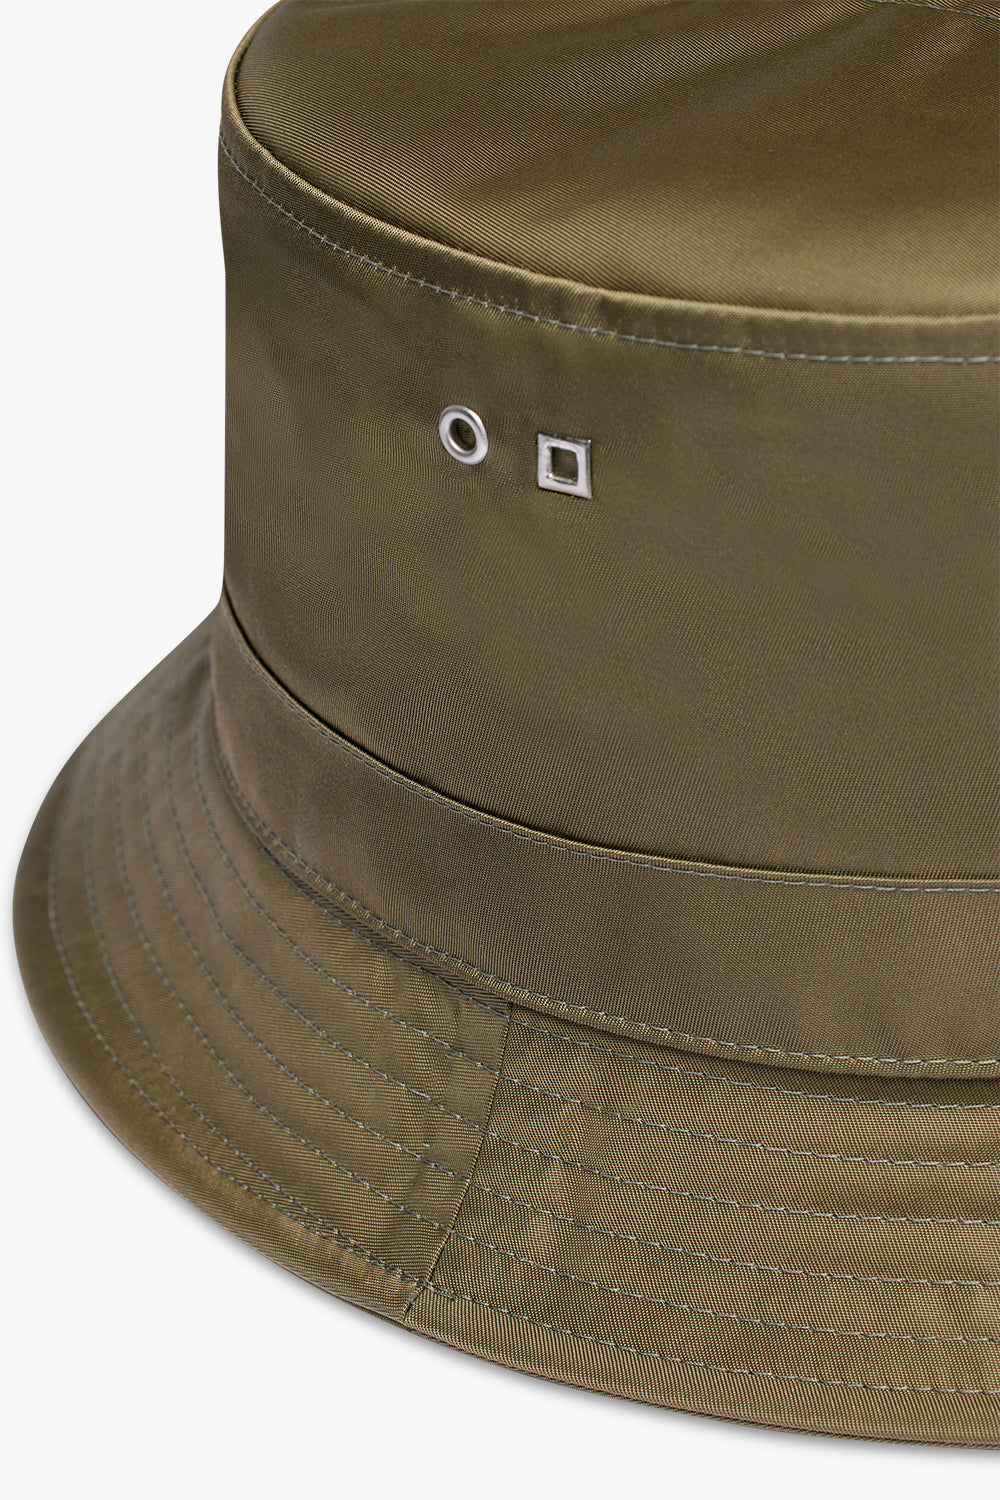 JACQUEMUS HATS Le Bob Ovalie Hat | Khaki